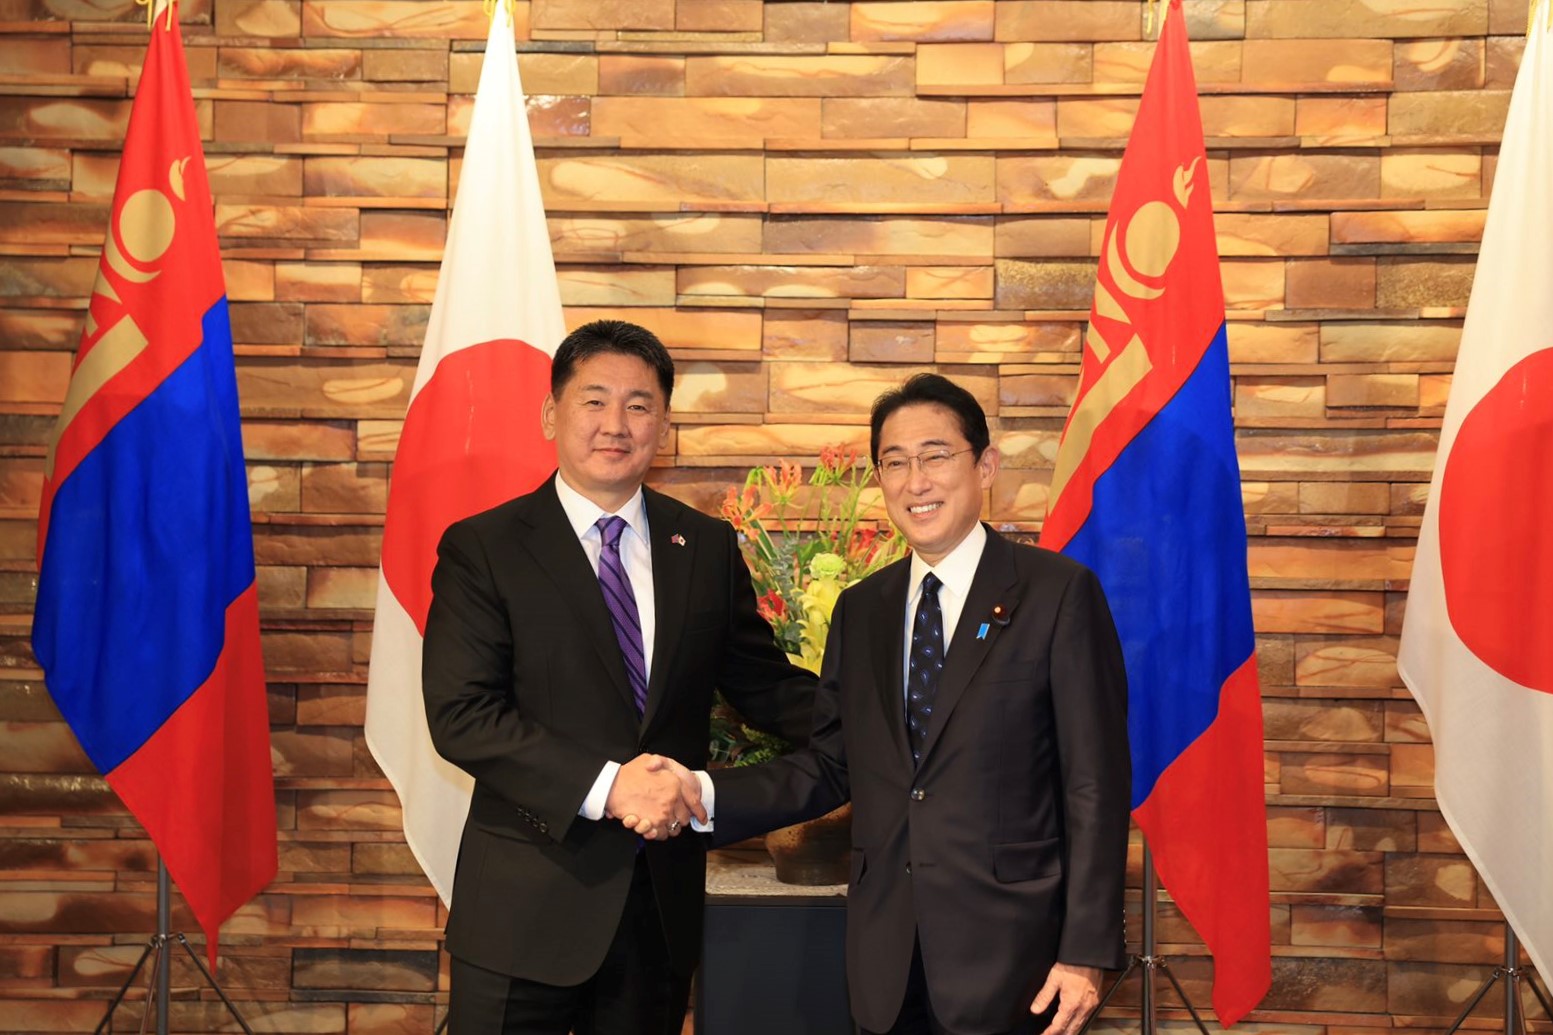 モンゴルのU.Khurelsukh大統領と日本の岸田首相との公式会談